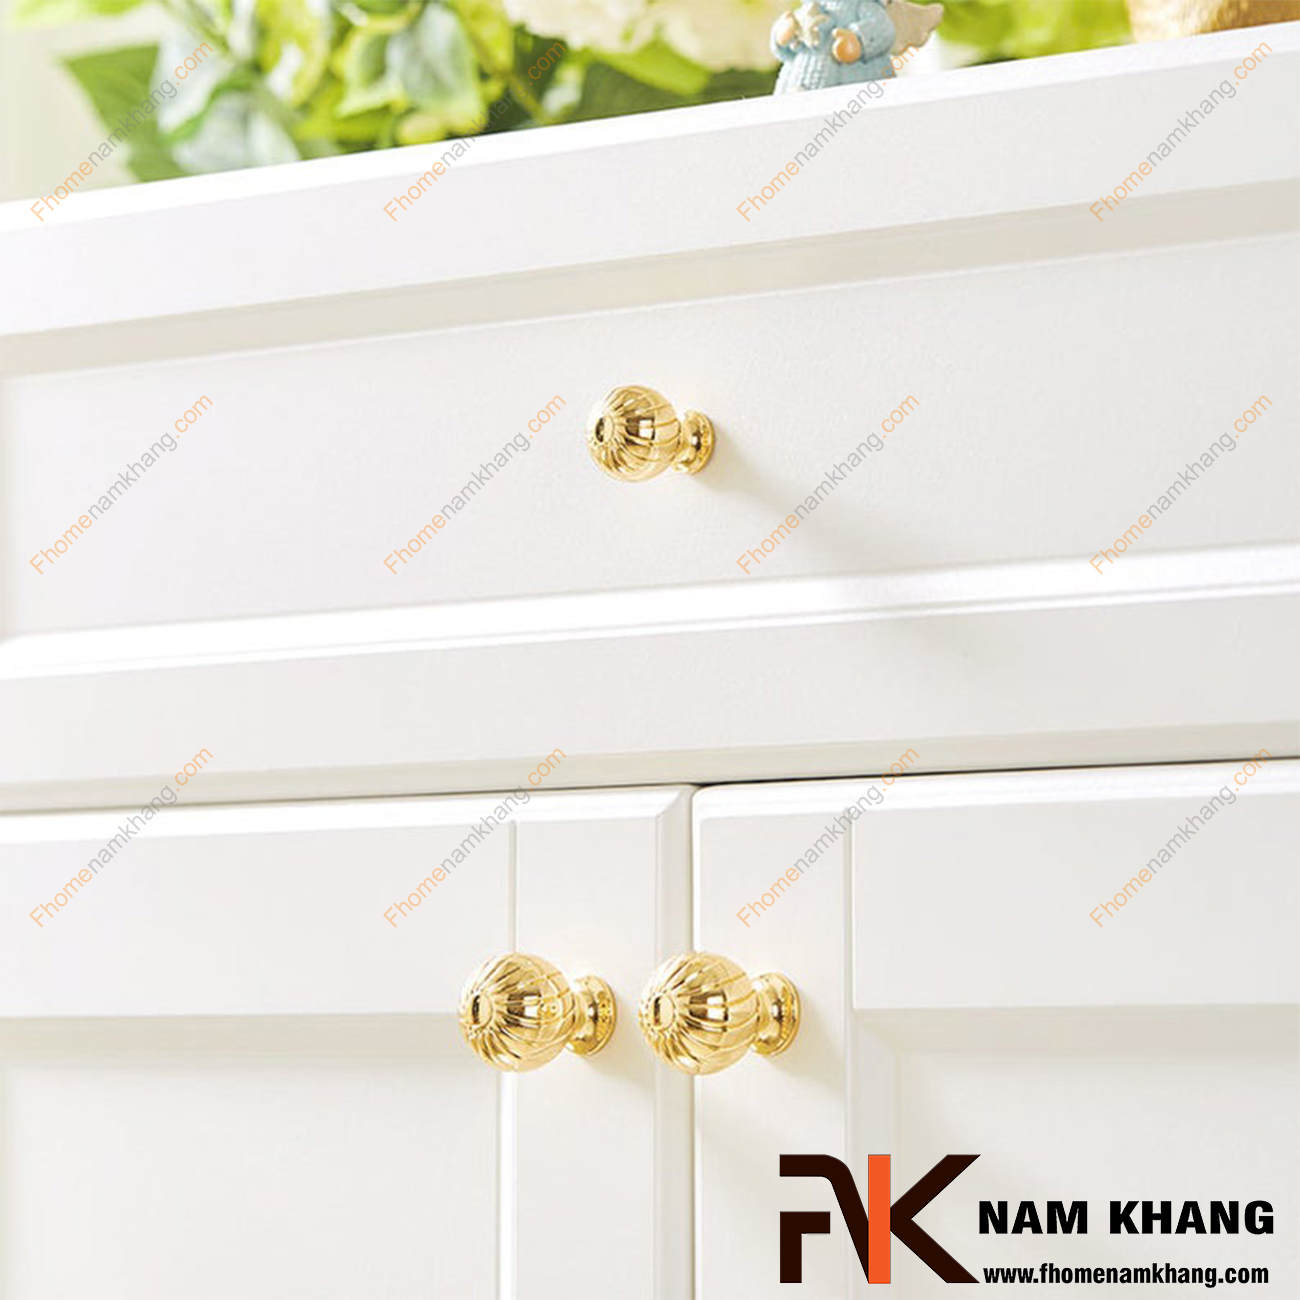 Núm cửa tủ vàng bóng NK441-24K là sản phẩm núm nắm tủ đặc trưng chuyên dùng cho các dòng tủ bếp, ngăn kéo, ngăn bàn, tủ nội thất.